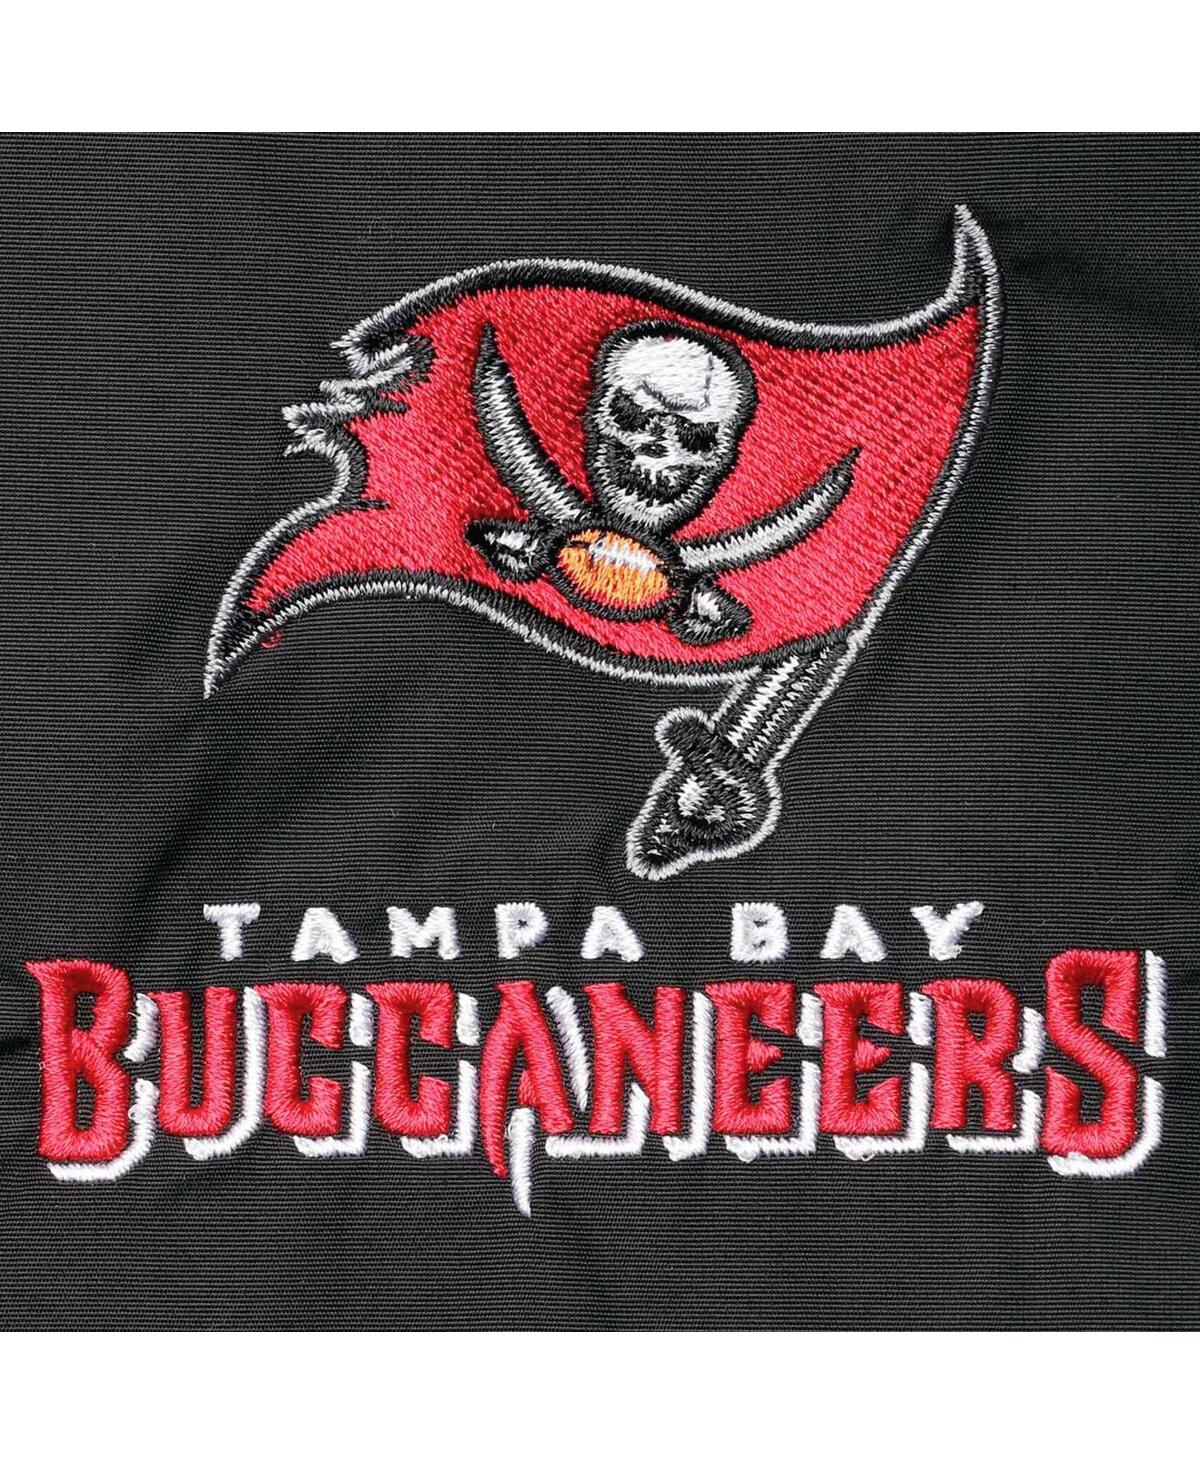 Shop Dunbrooke Men's  Black Tampa Bay Buccaneers Triumph Fleece Full-zip Jacket